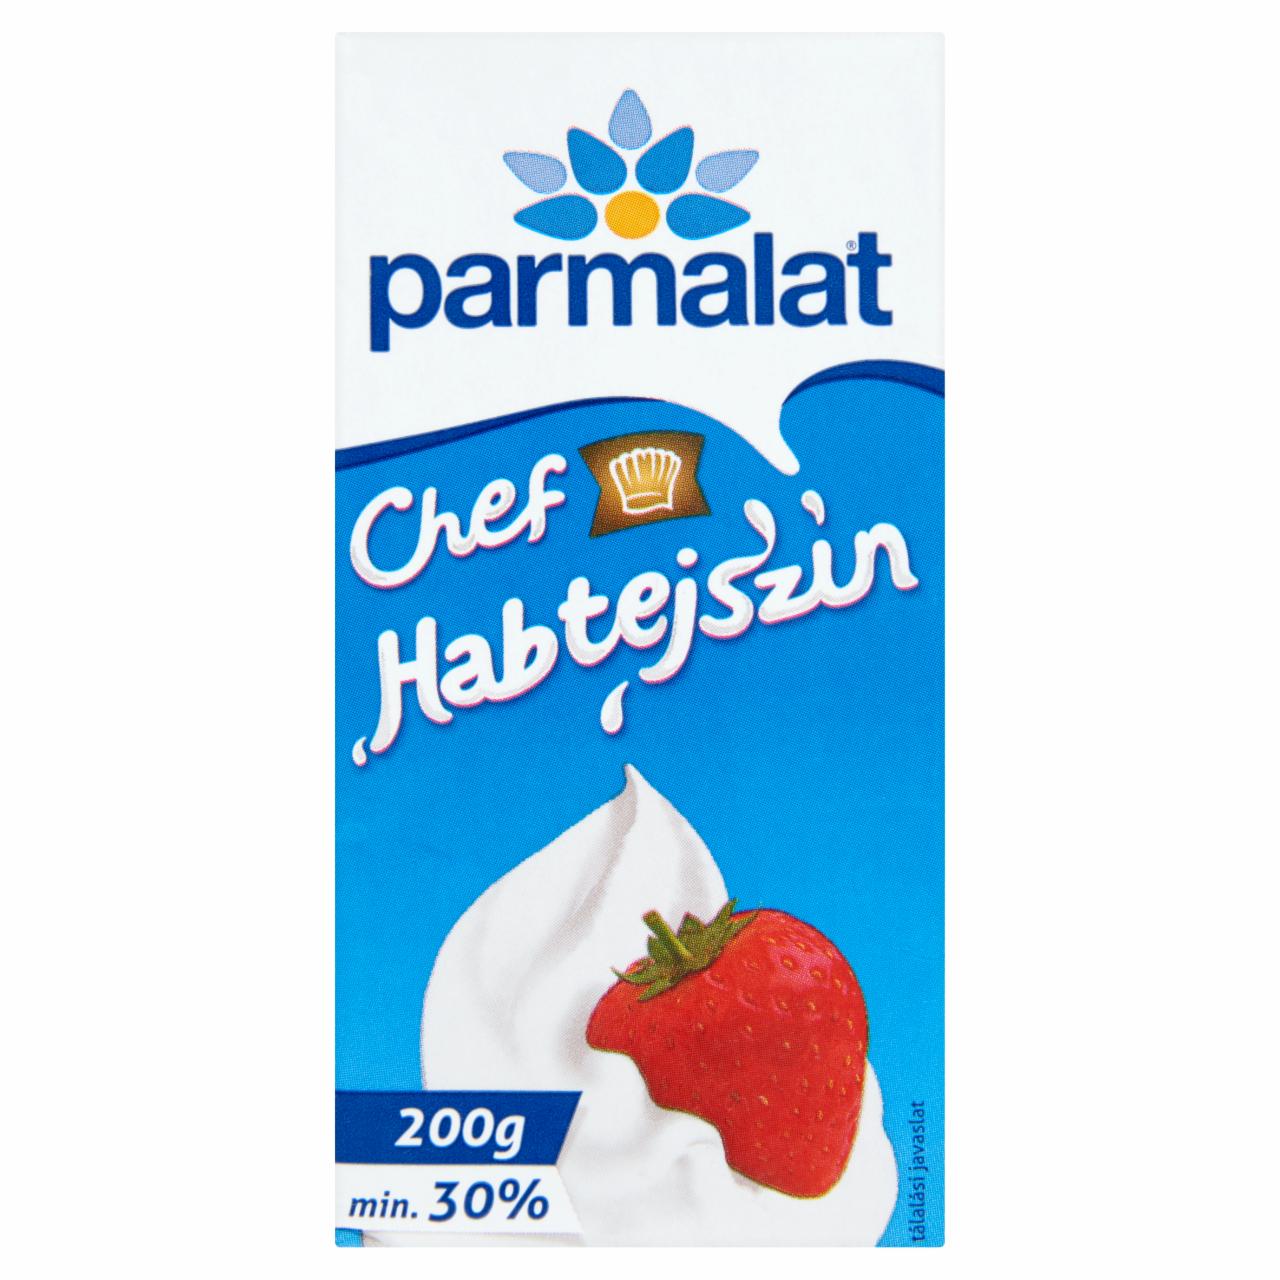 Képek - Parmalat Chef UHT habtejszín 30% 200 g